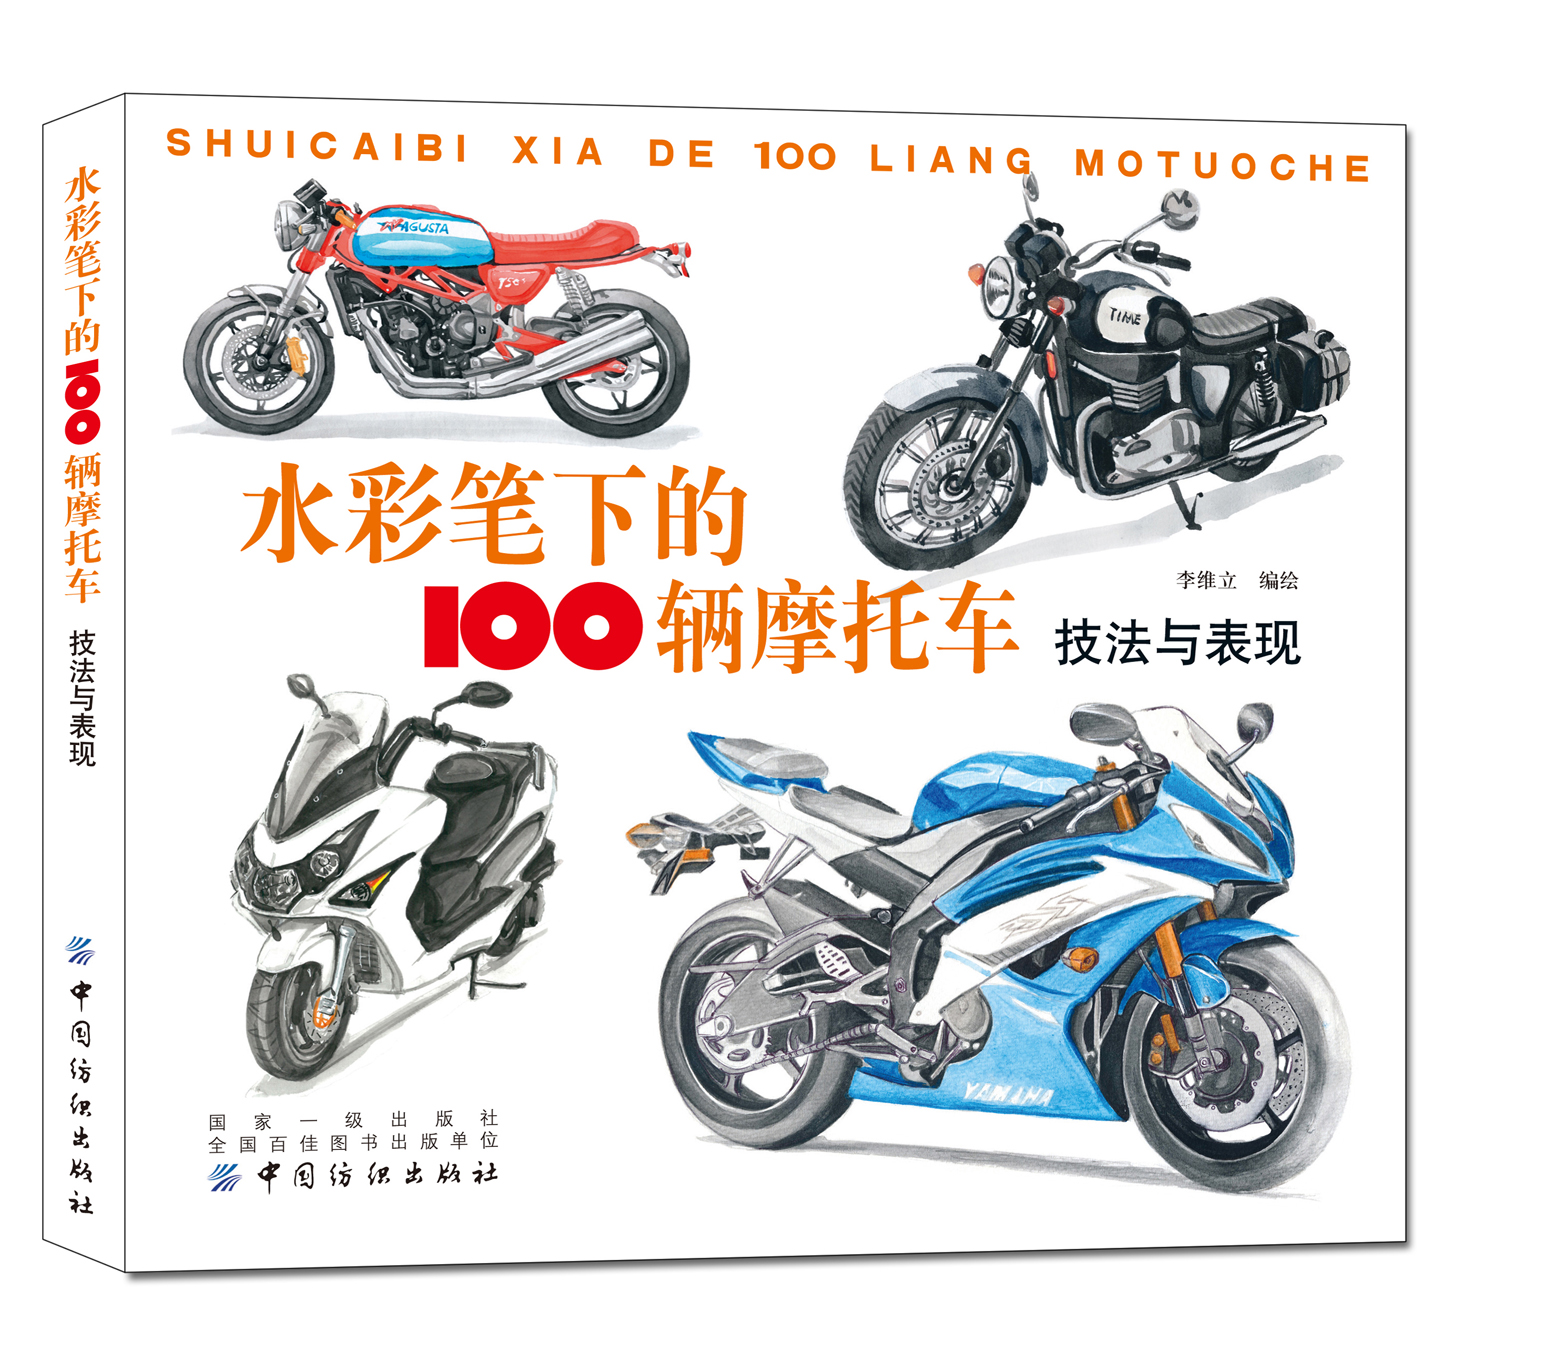 水彩笔下的100辆摩托车技法与表现摩托车大致的年代品牌车型特征介绍 水彩作画技巧 工业水彩绘画 摩托车水彩手绘绘画技法书籍